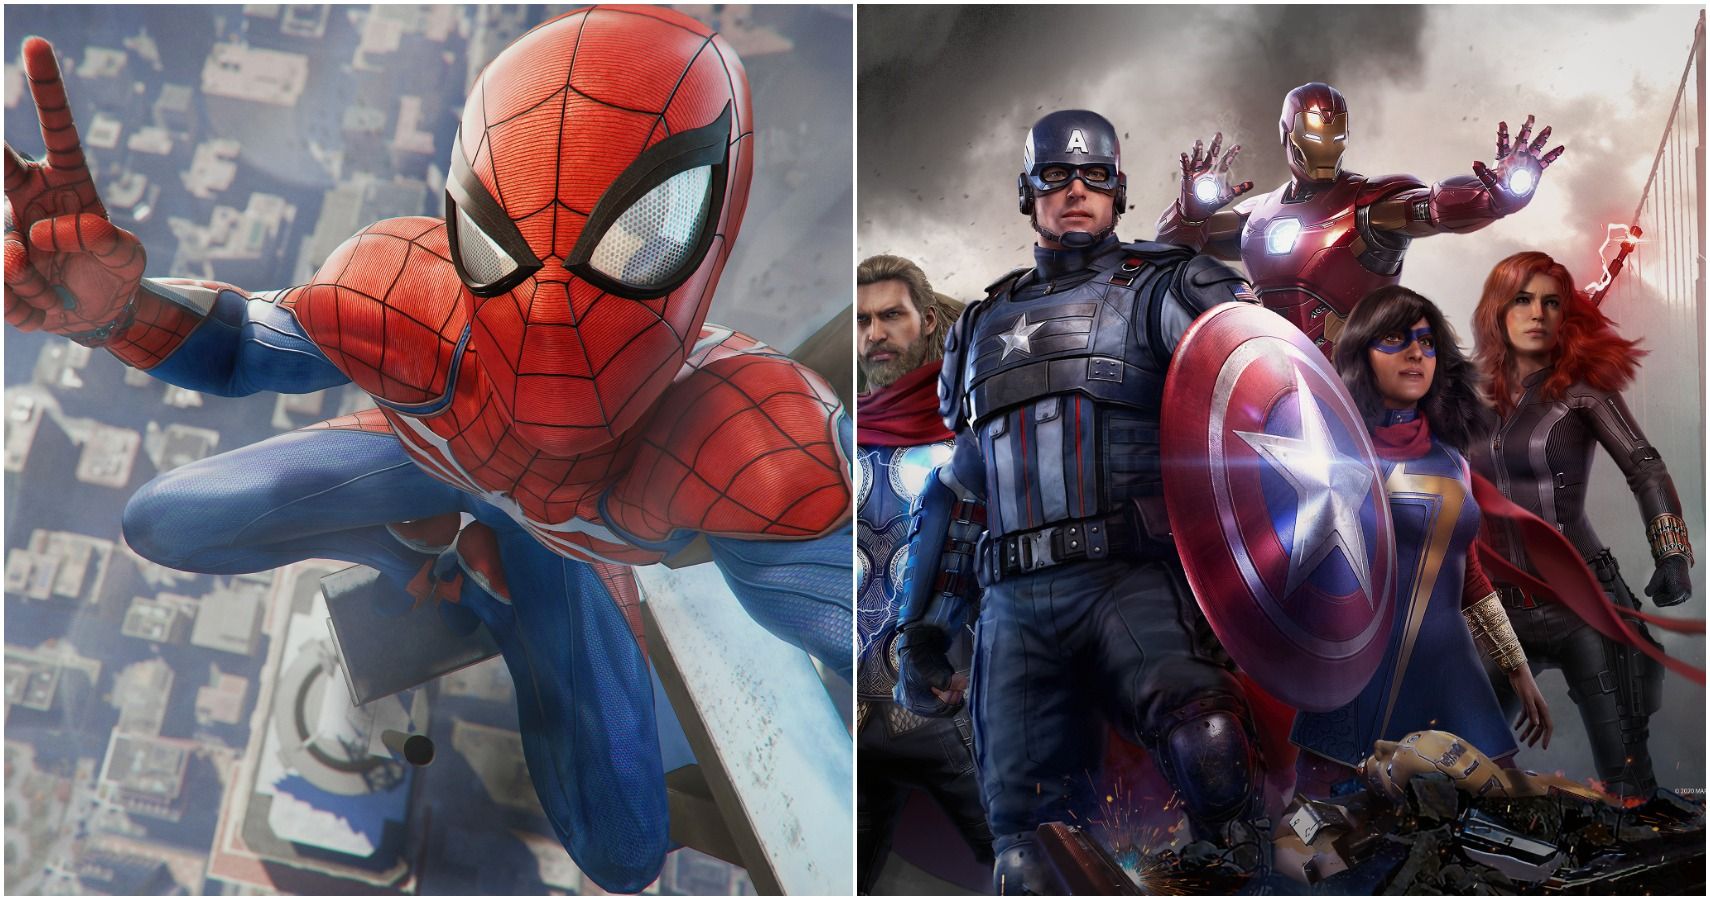 Spider-Man PS4 vs Avengers